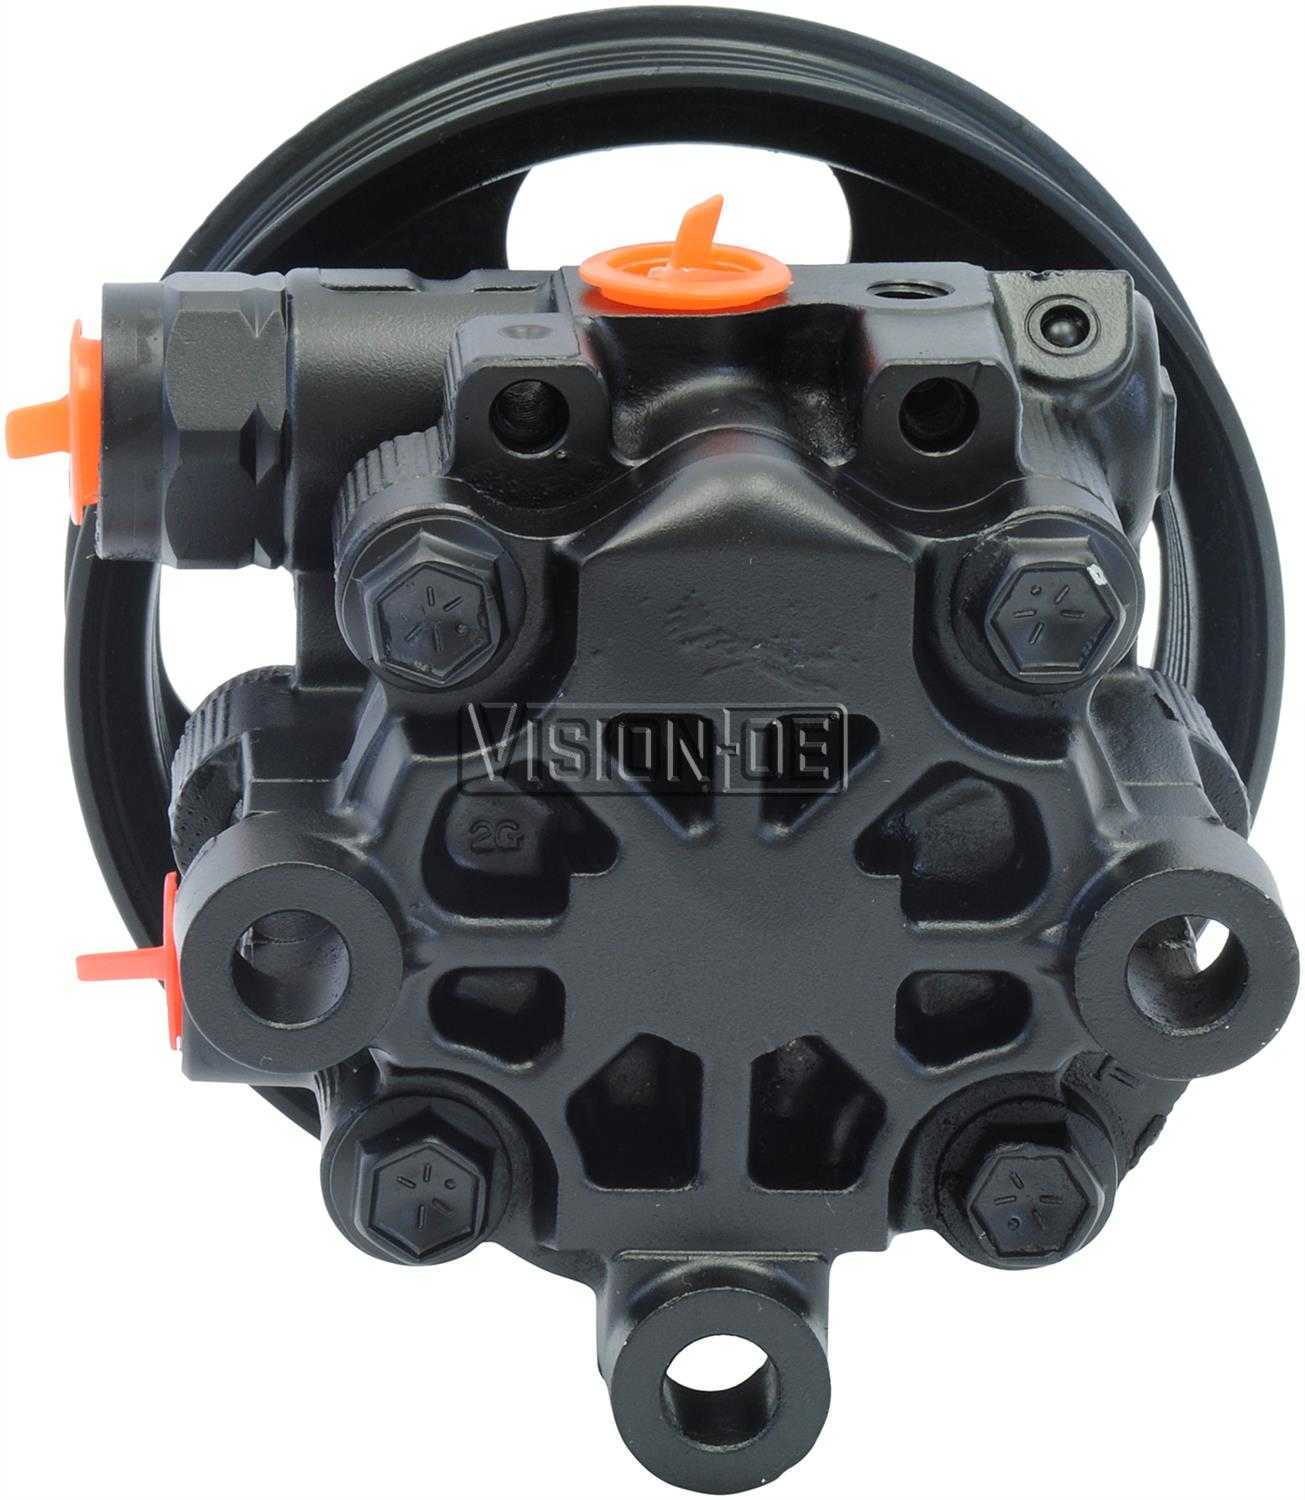 VISION-OE - Reman Power Steering Pump - VOE 990-0668